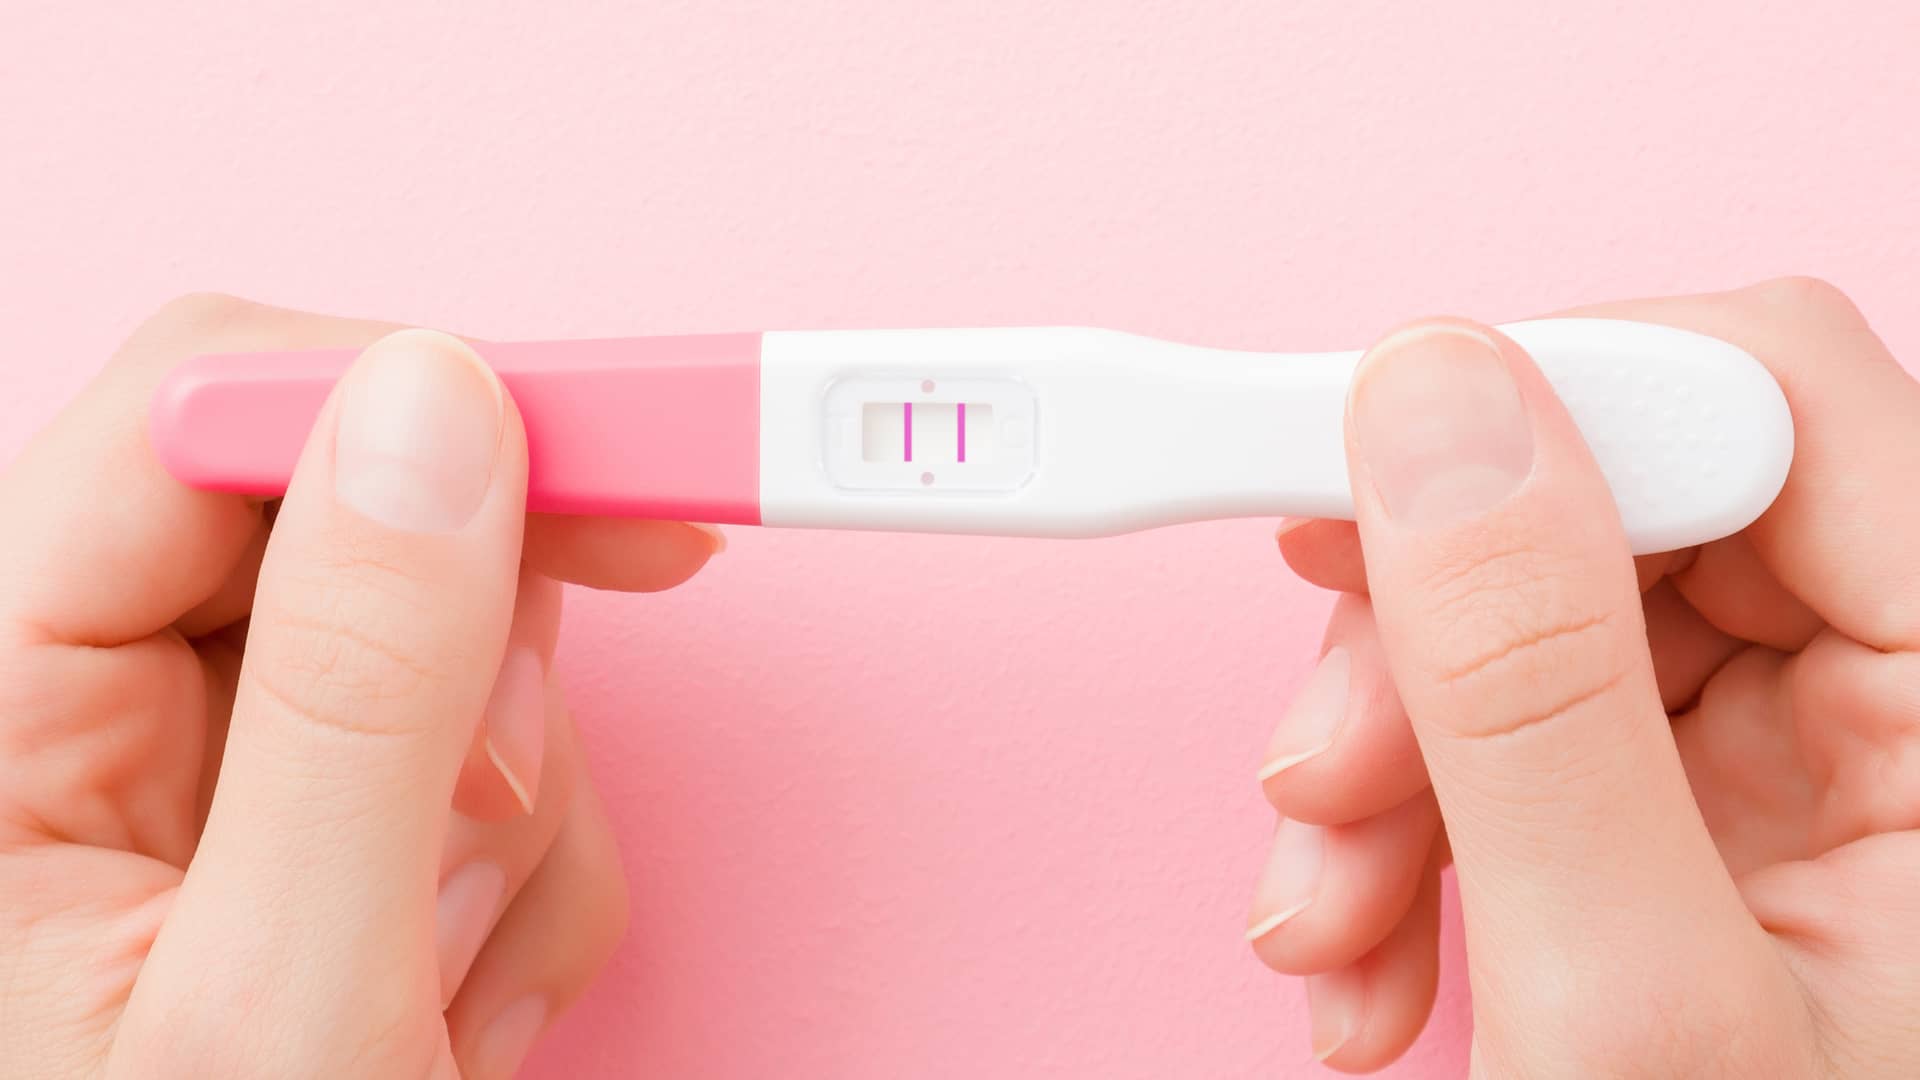 Test de embarazo positivo: dos rayas, un símbolo + o "Embarazada"